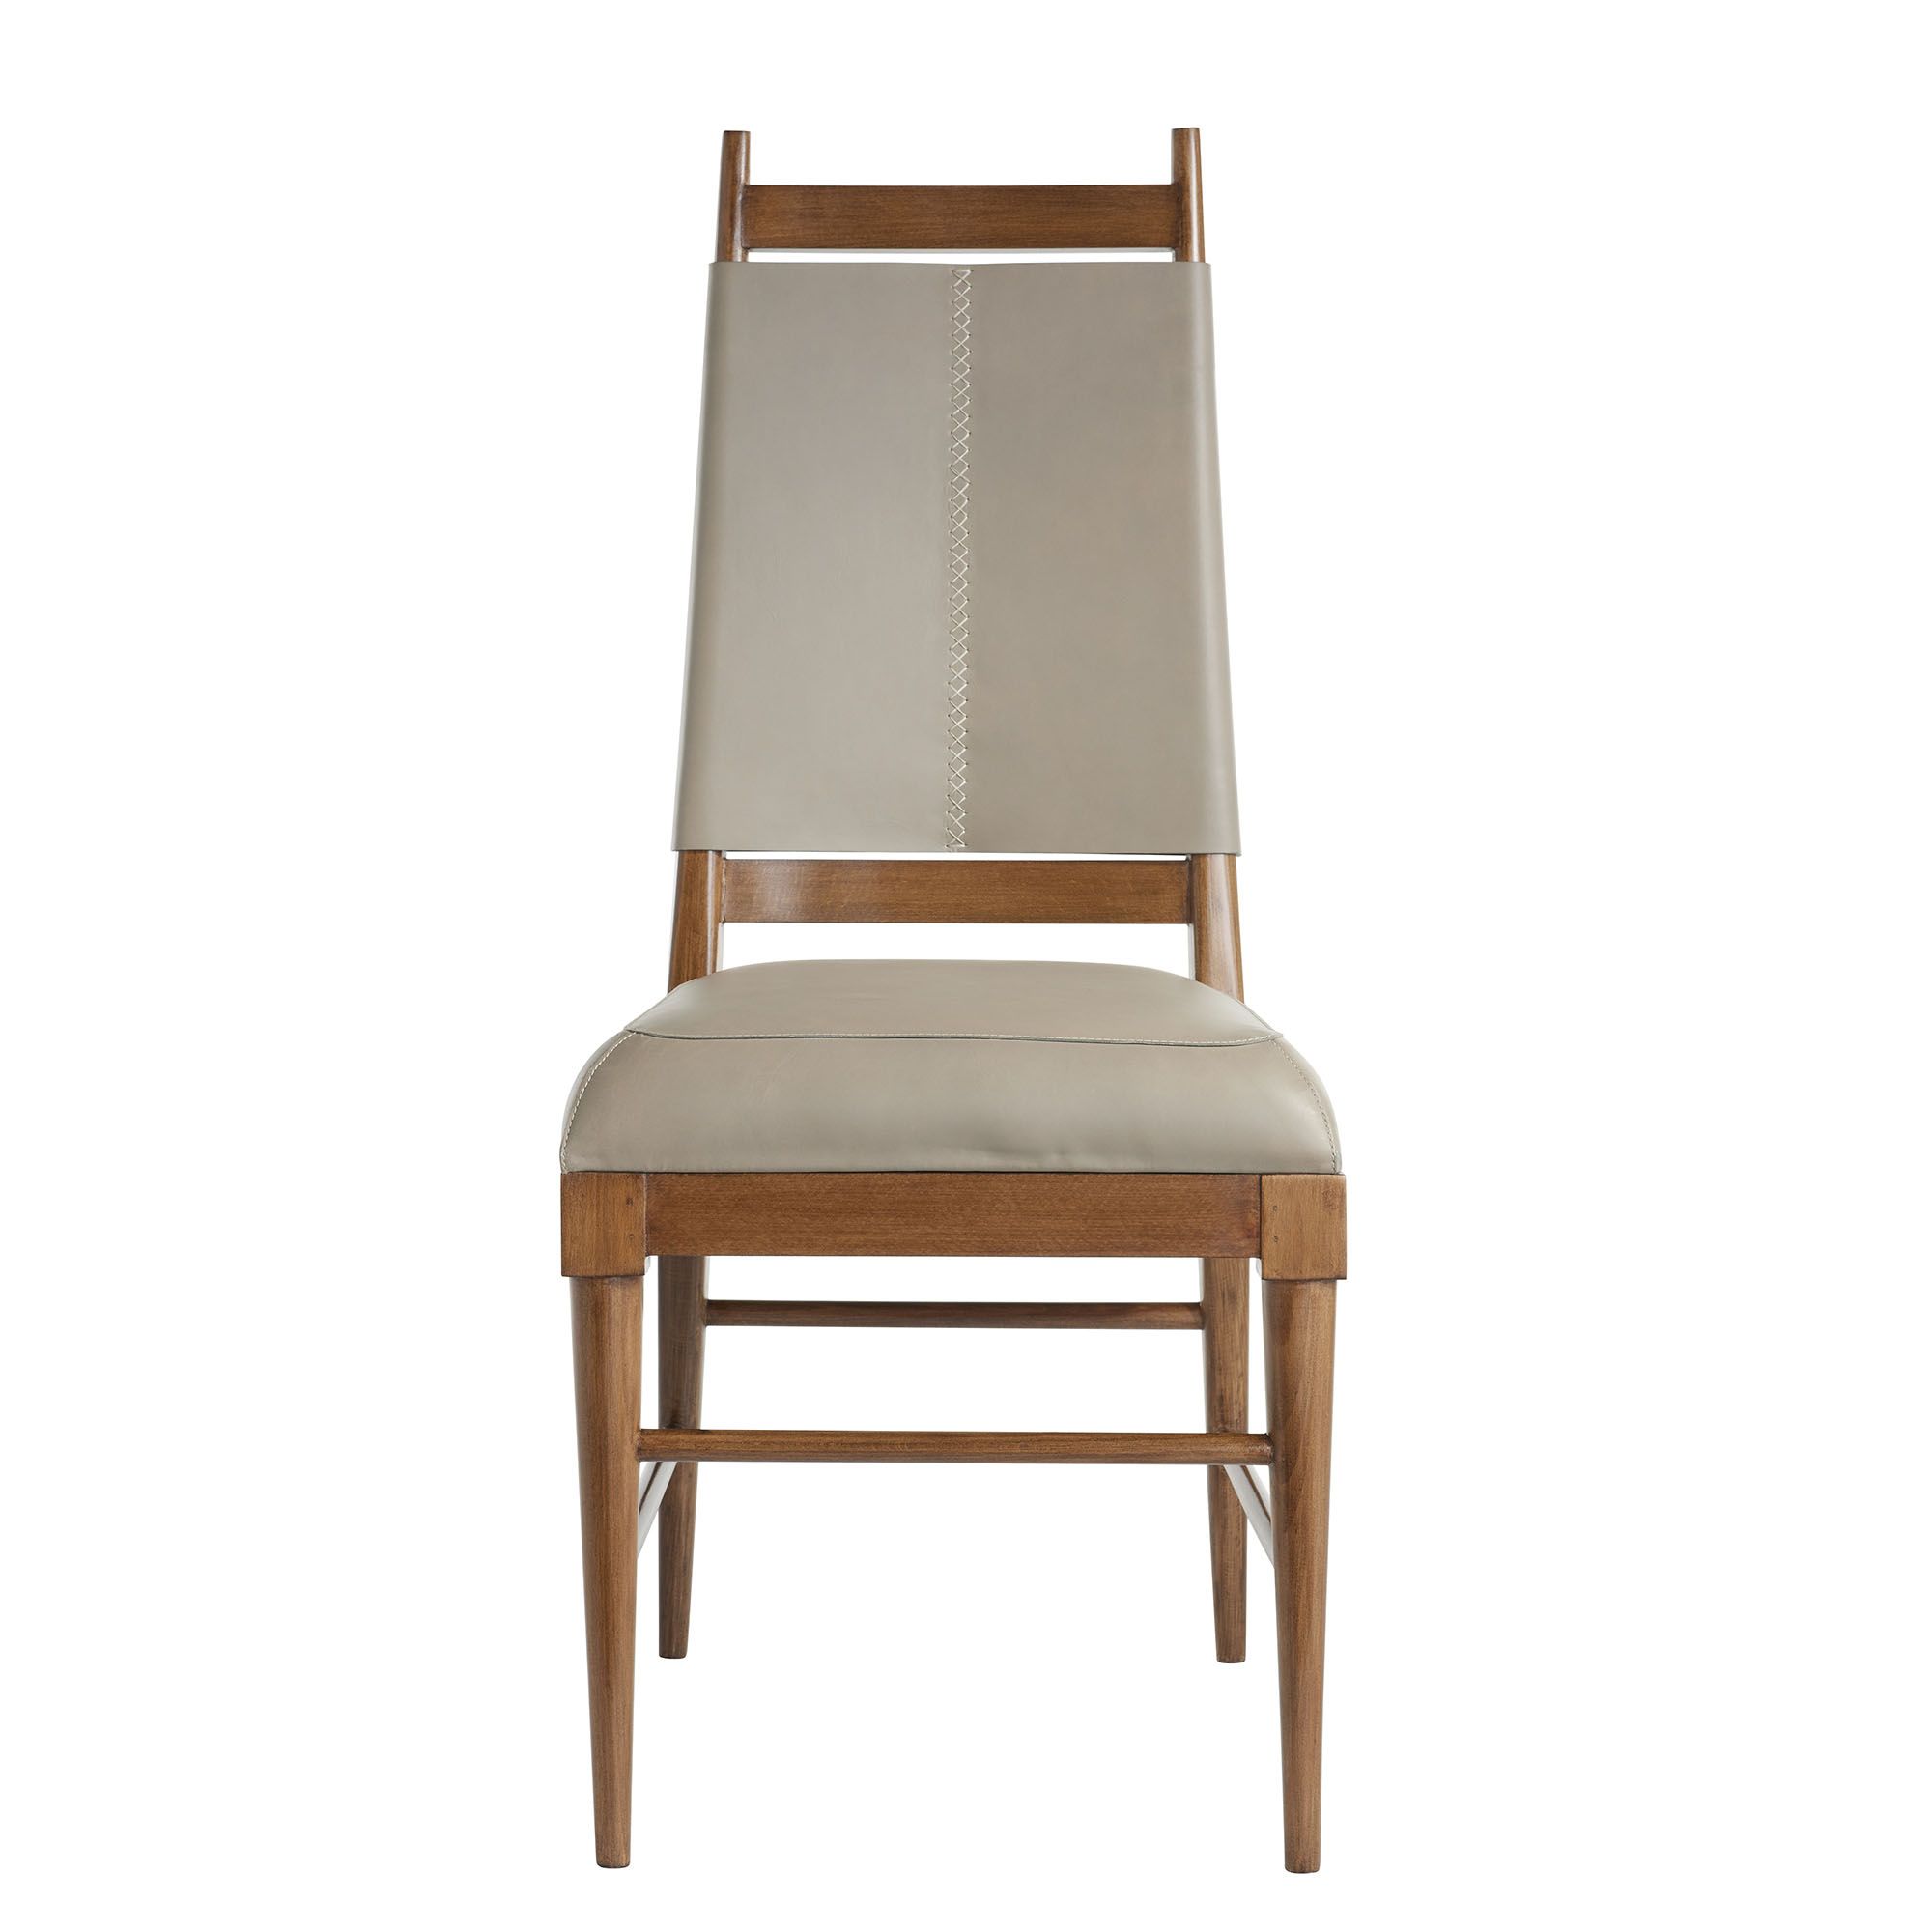 Купить Кресло Keegan Chair в интернет-магазине roooms.ru